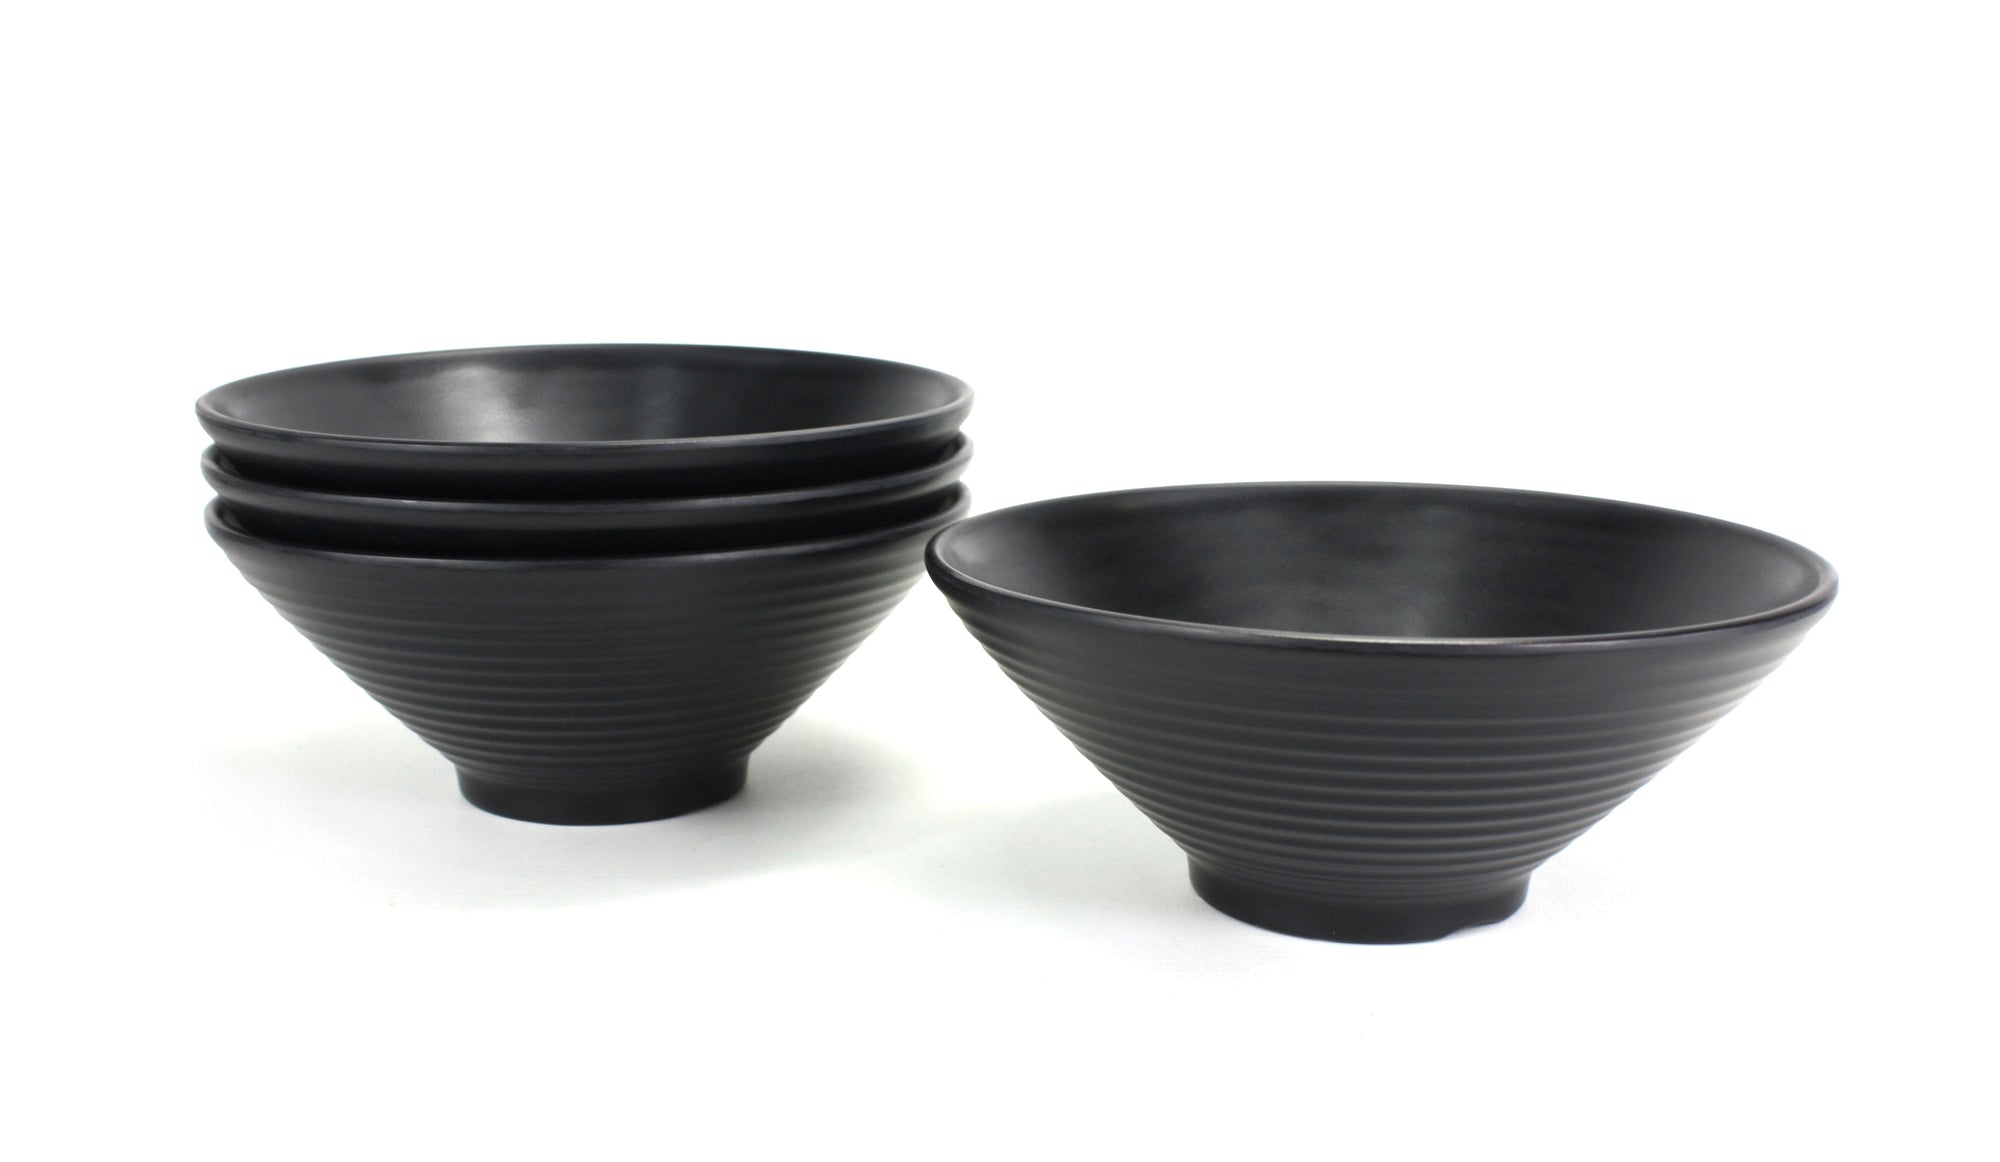 Japanese style ramen noodle bowls, 2 sizes available - farangshop-co